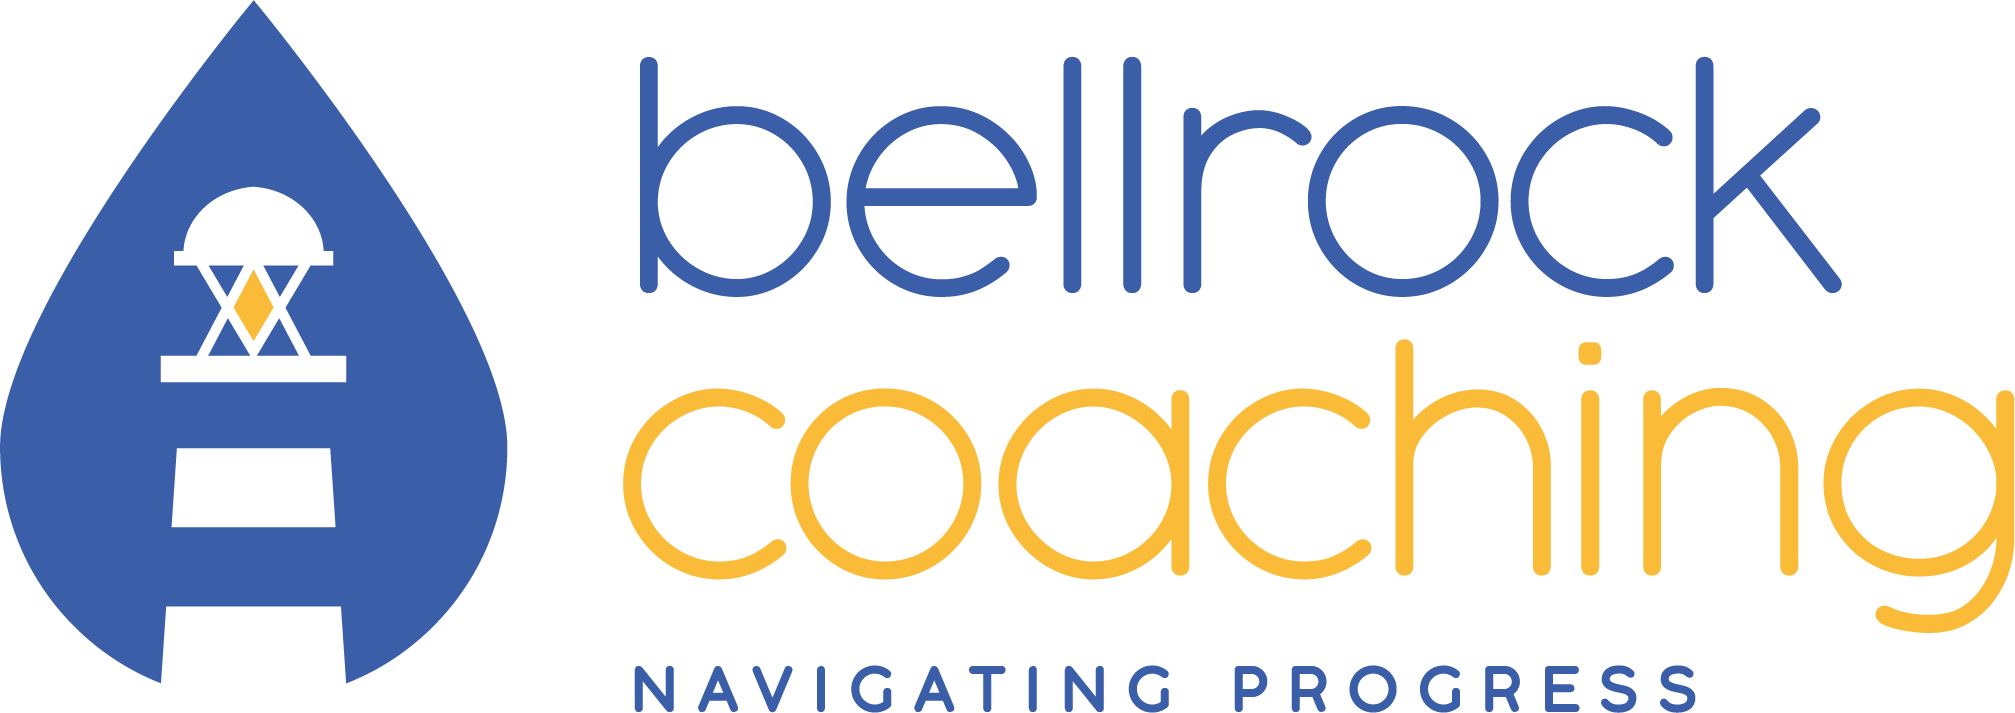 Bellrock Coaching